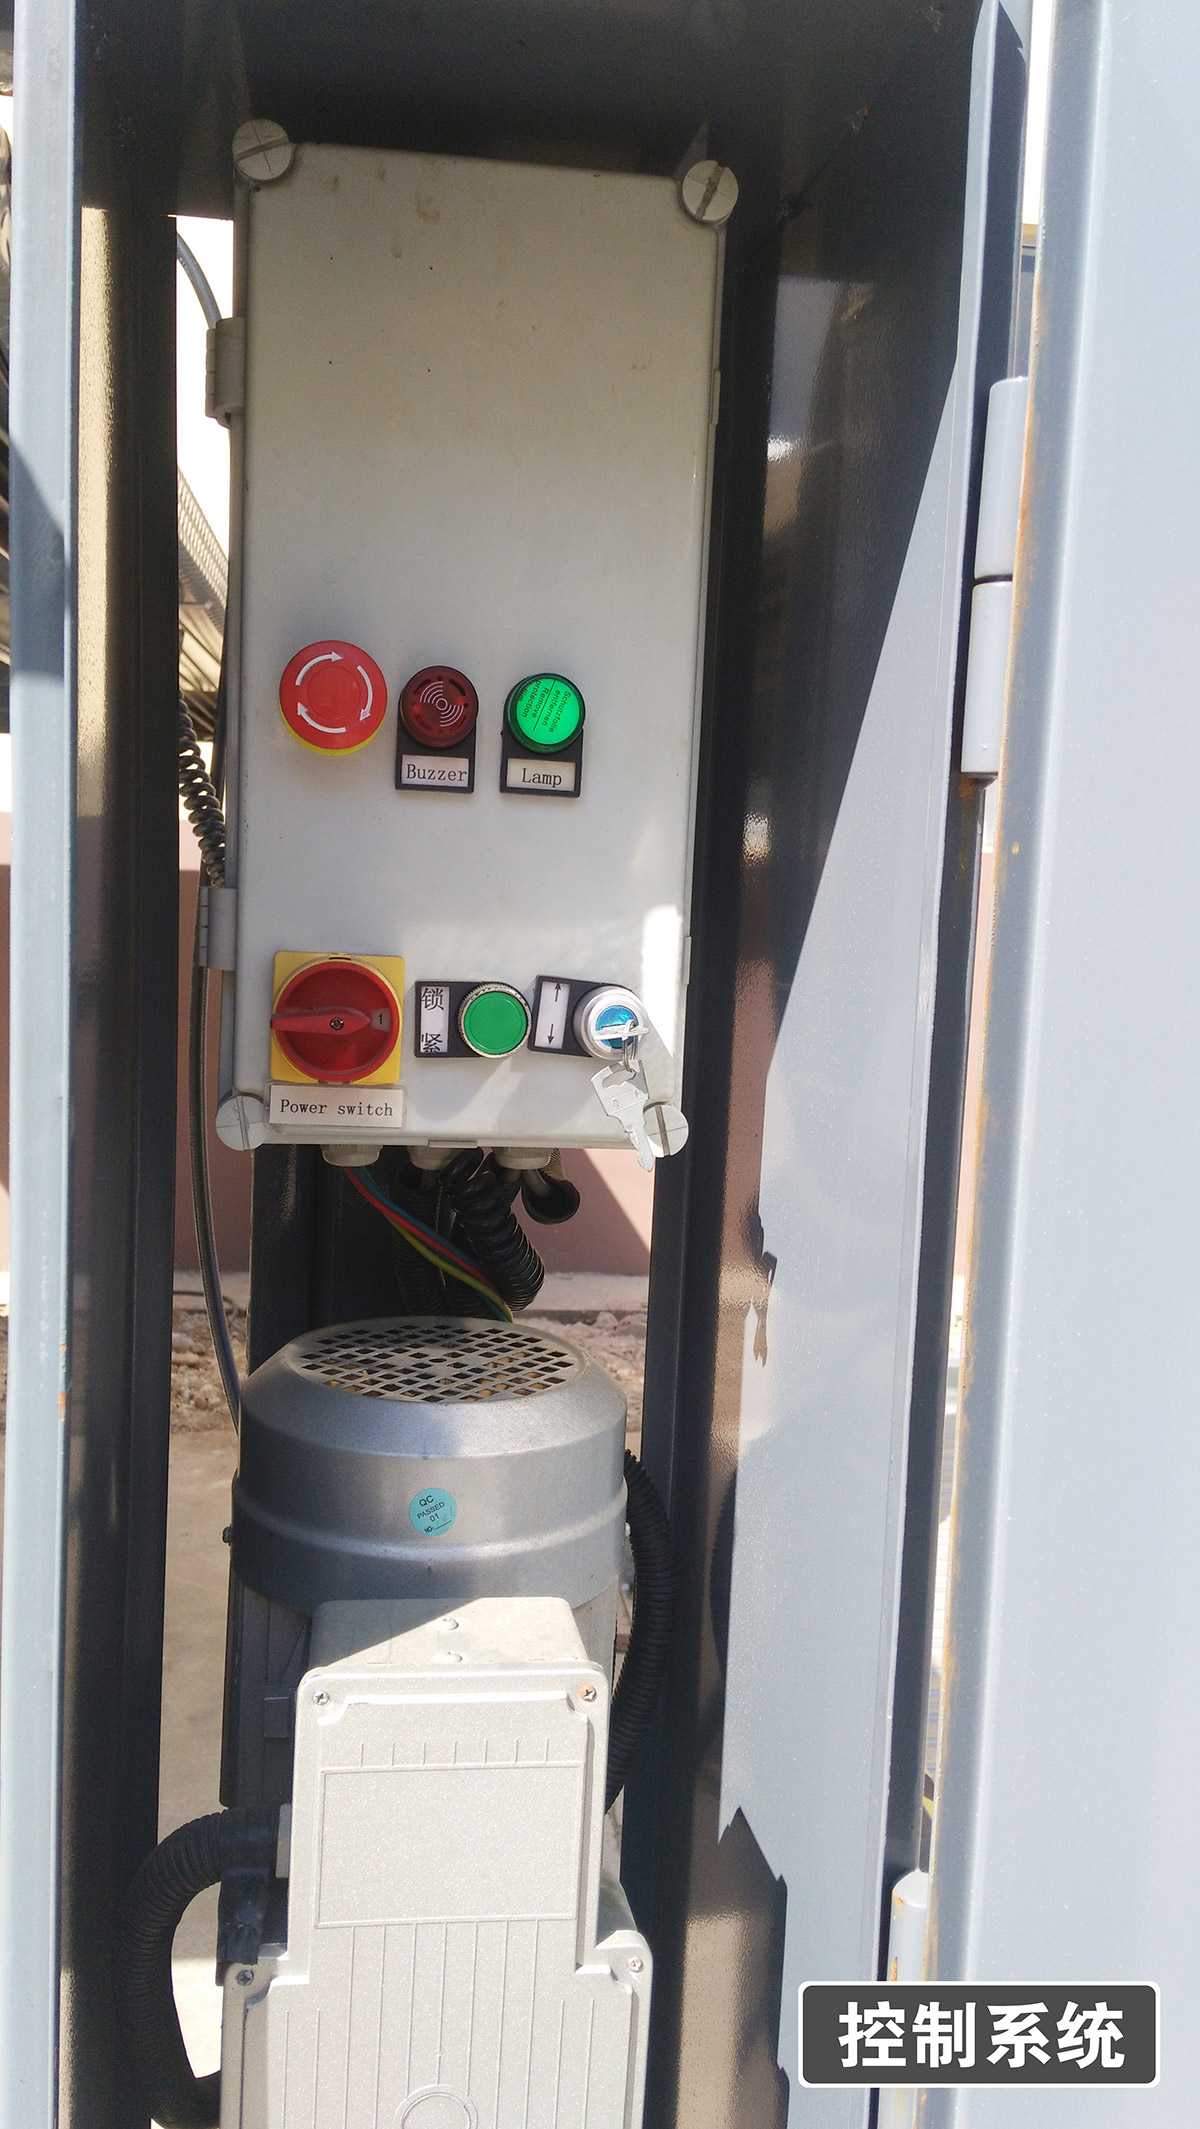 立体车位四柱简易升降机械停车设备控制系统.jpg